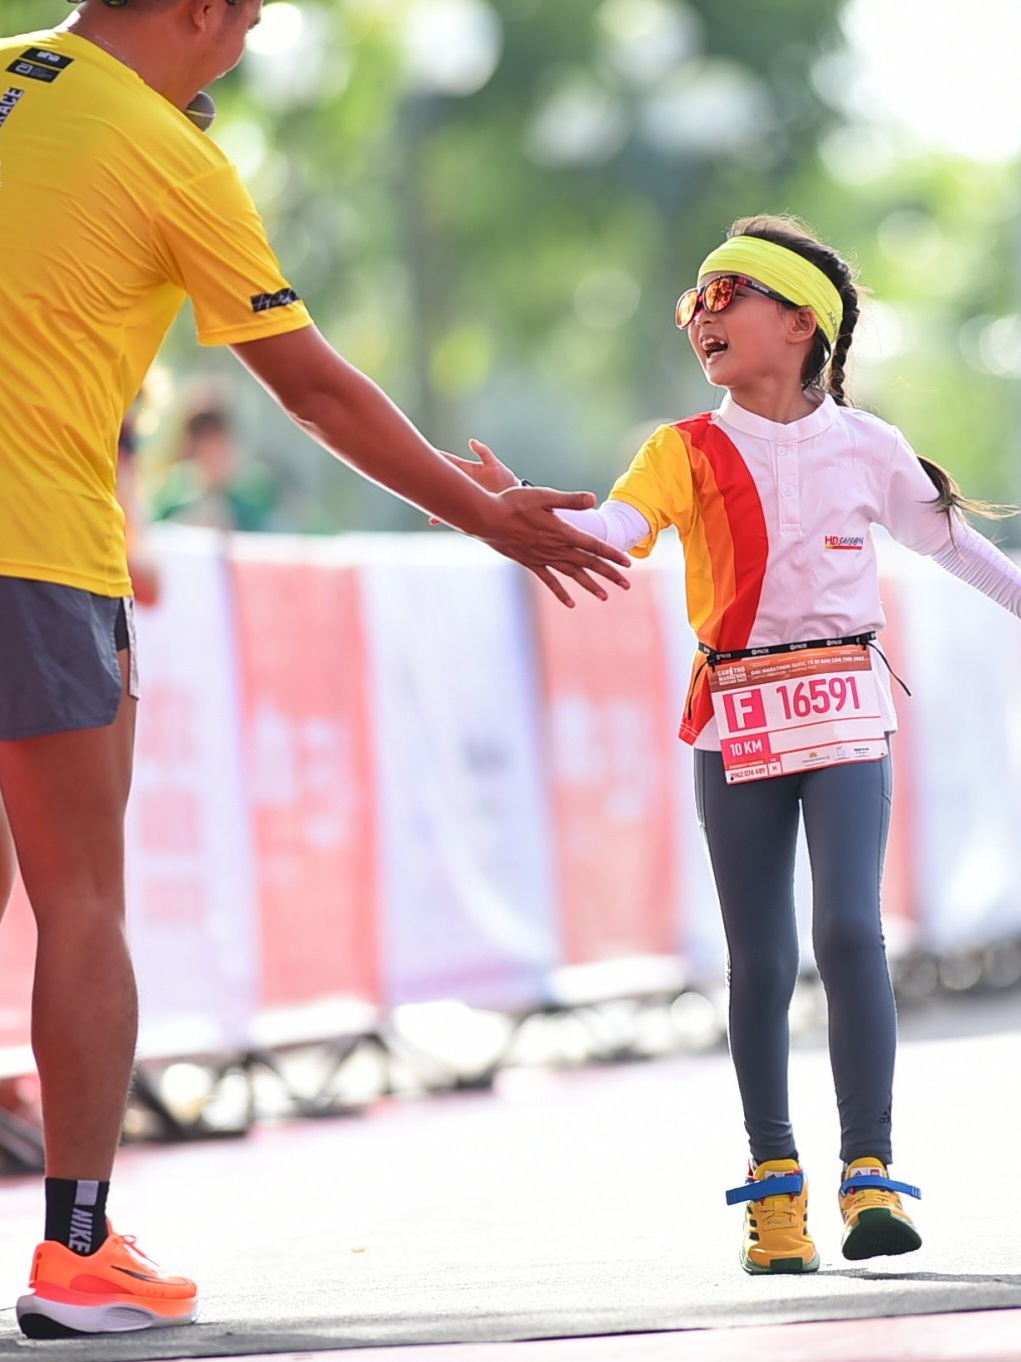 Được bố cho chạy bộ chỉ để rèn luyện sức khỏe từ lúc 5 tuổi, 3 năm sau cô bé chinh phục đường chạy 21km, tham gia 20 giải chạy mỗi năm - Ảnh 6.